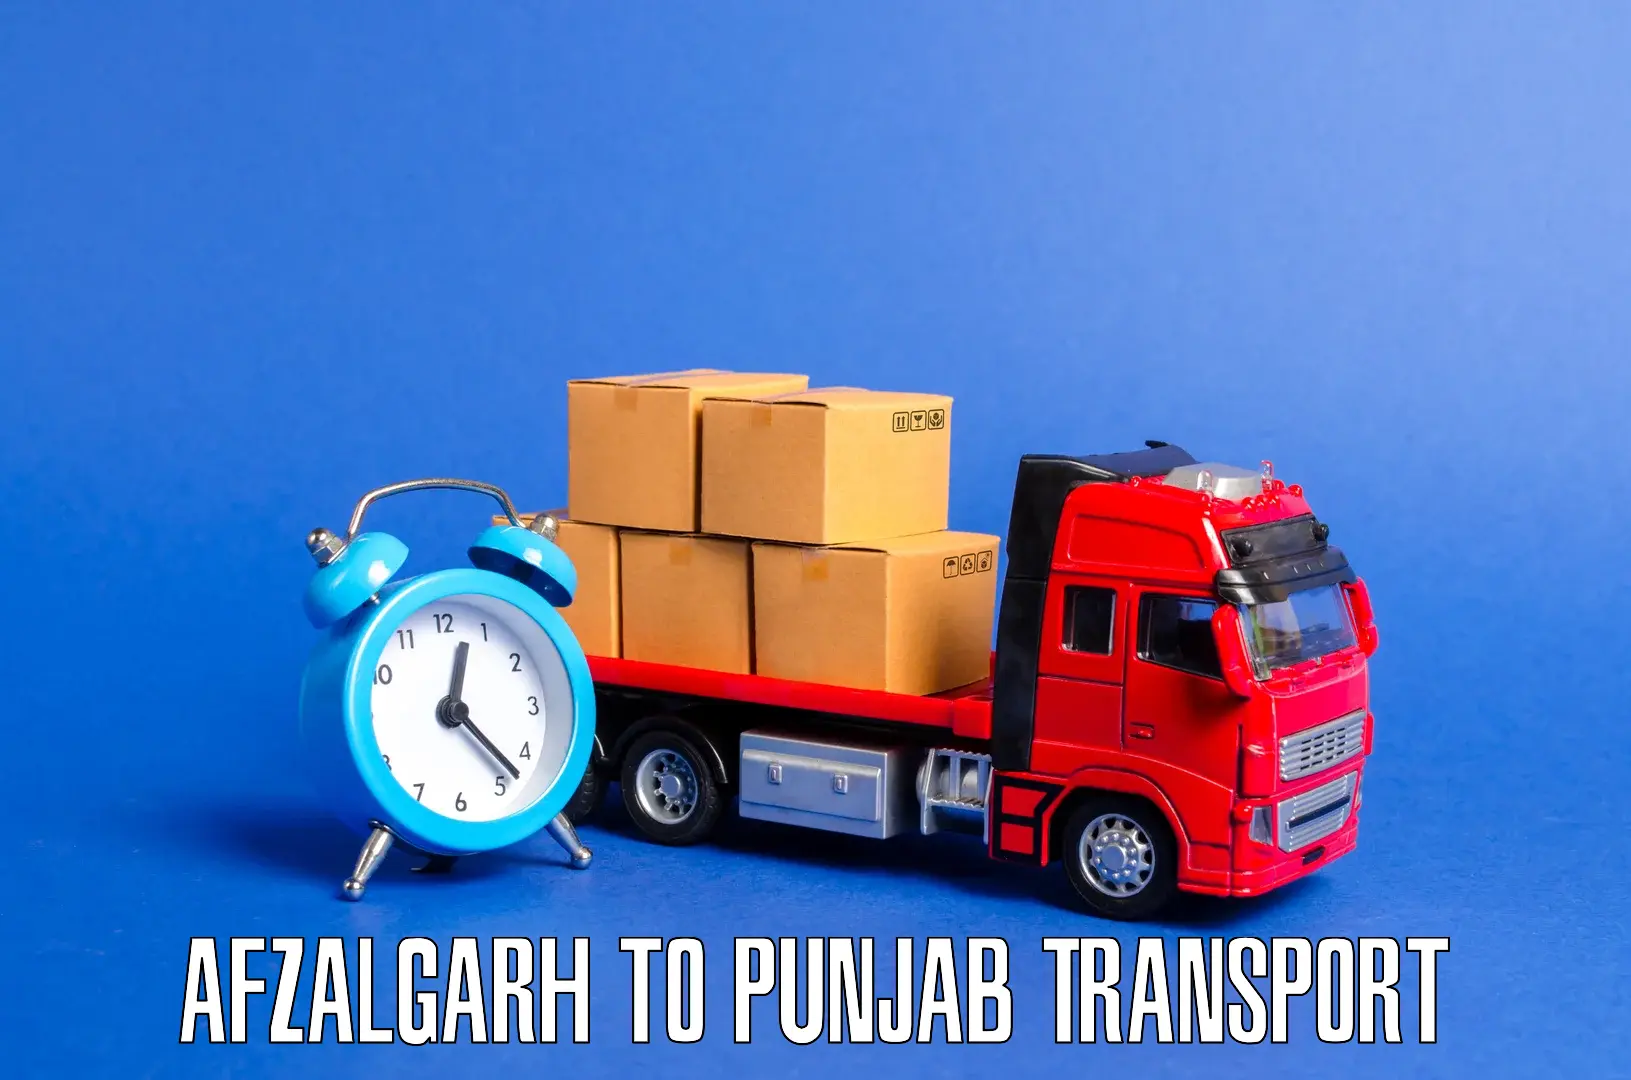 Lorry transport service Afzalgarh to Anandpur Sahib